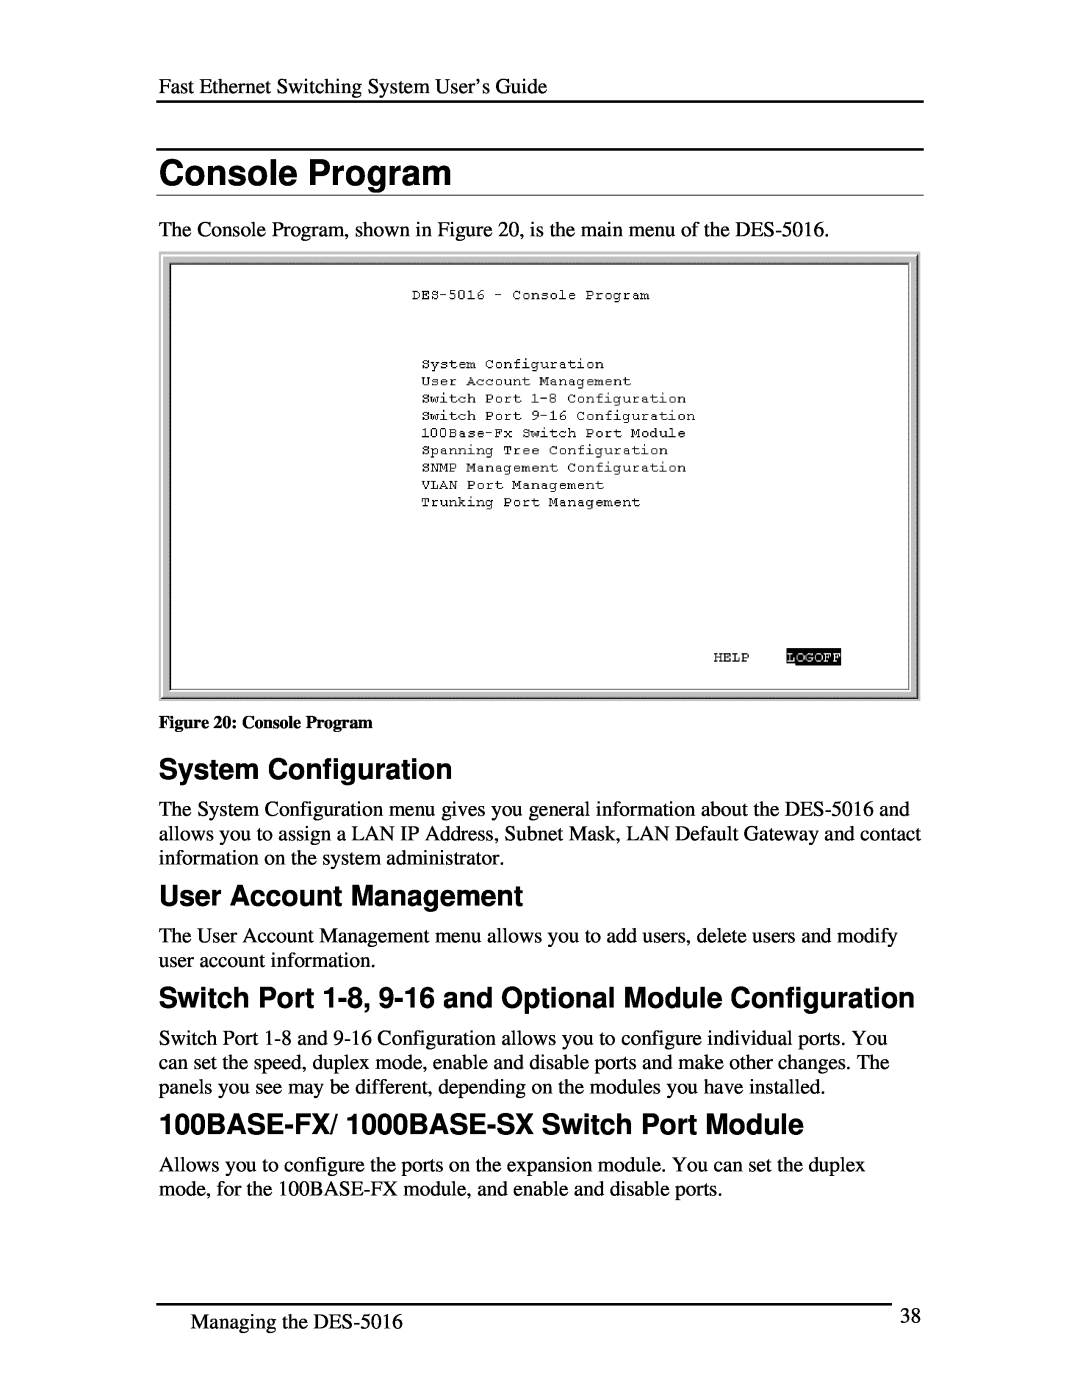 D-Link DES-5016 Console Program, System Configuration, User Account Management, 100BASE-FX/ 1000BASE-SX Switch Port Module 